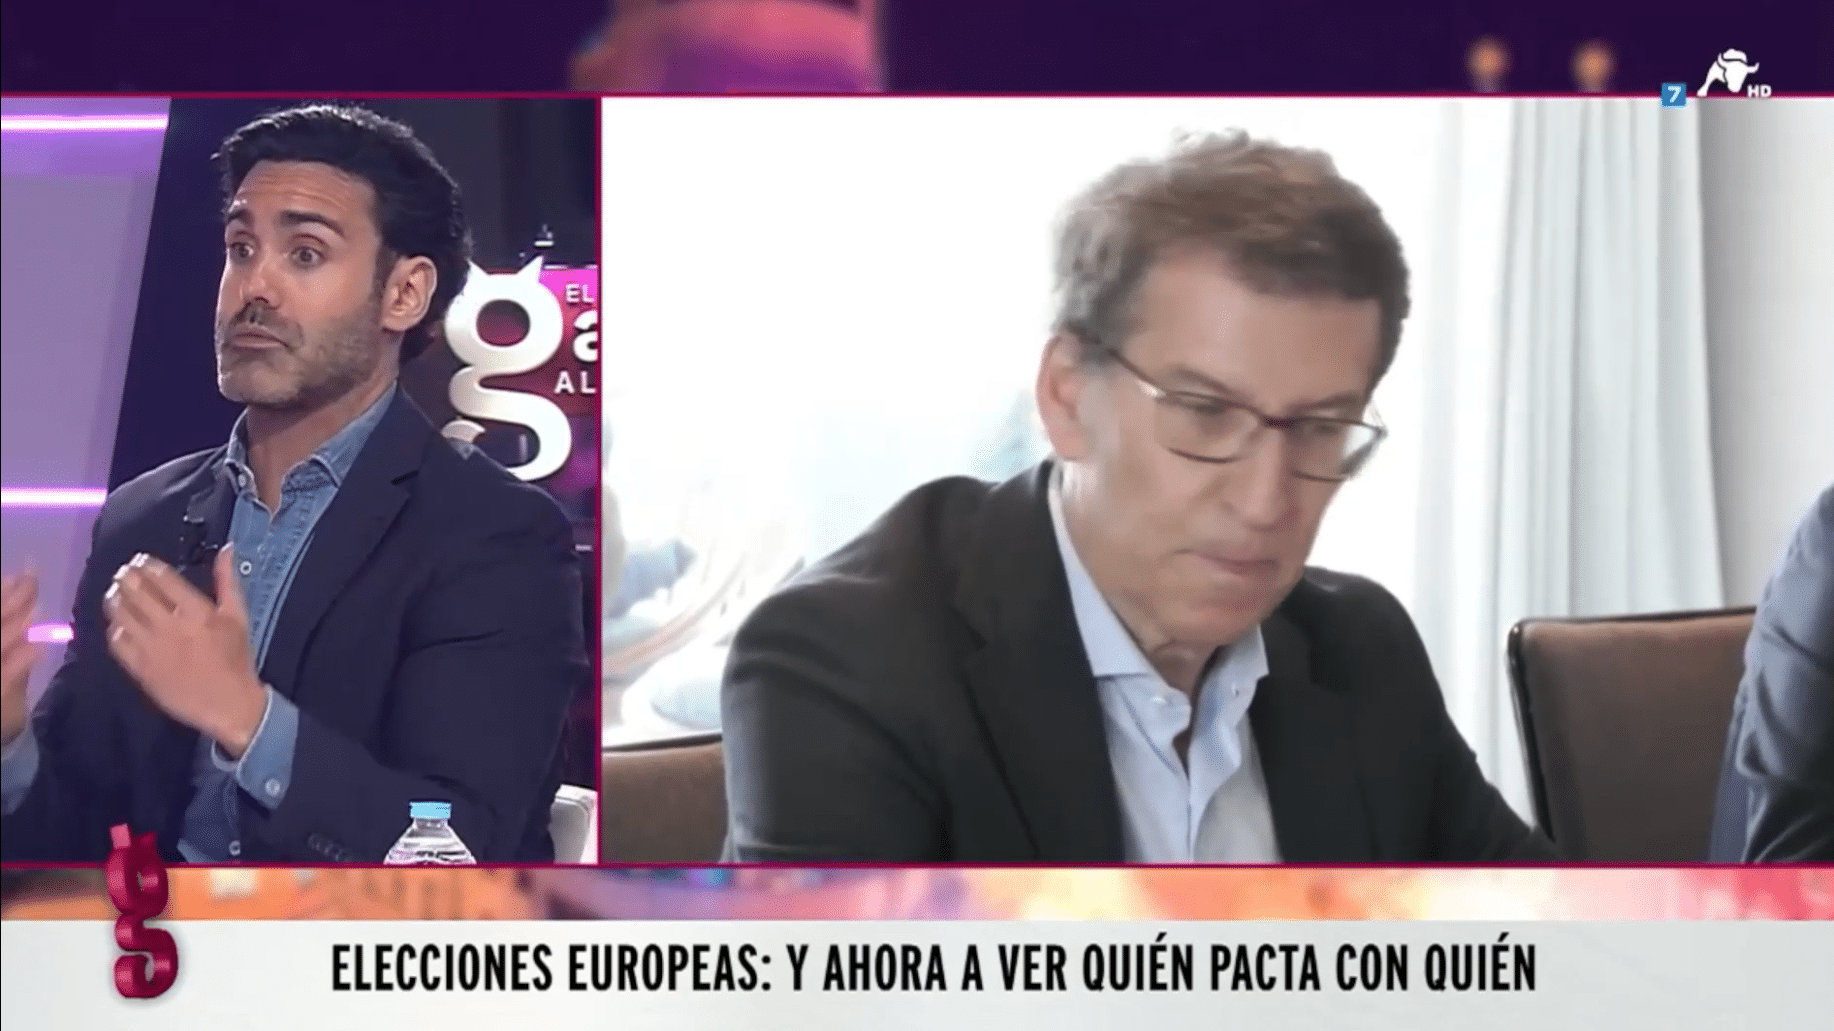 El PP valiente: Brabezo pide que no se llame “extrema derecha” a los socios de VOX en Europa